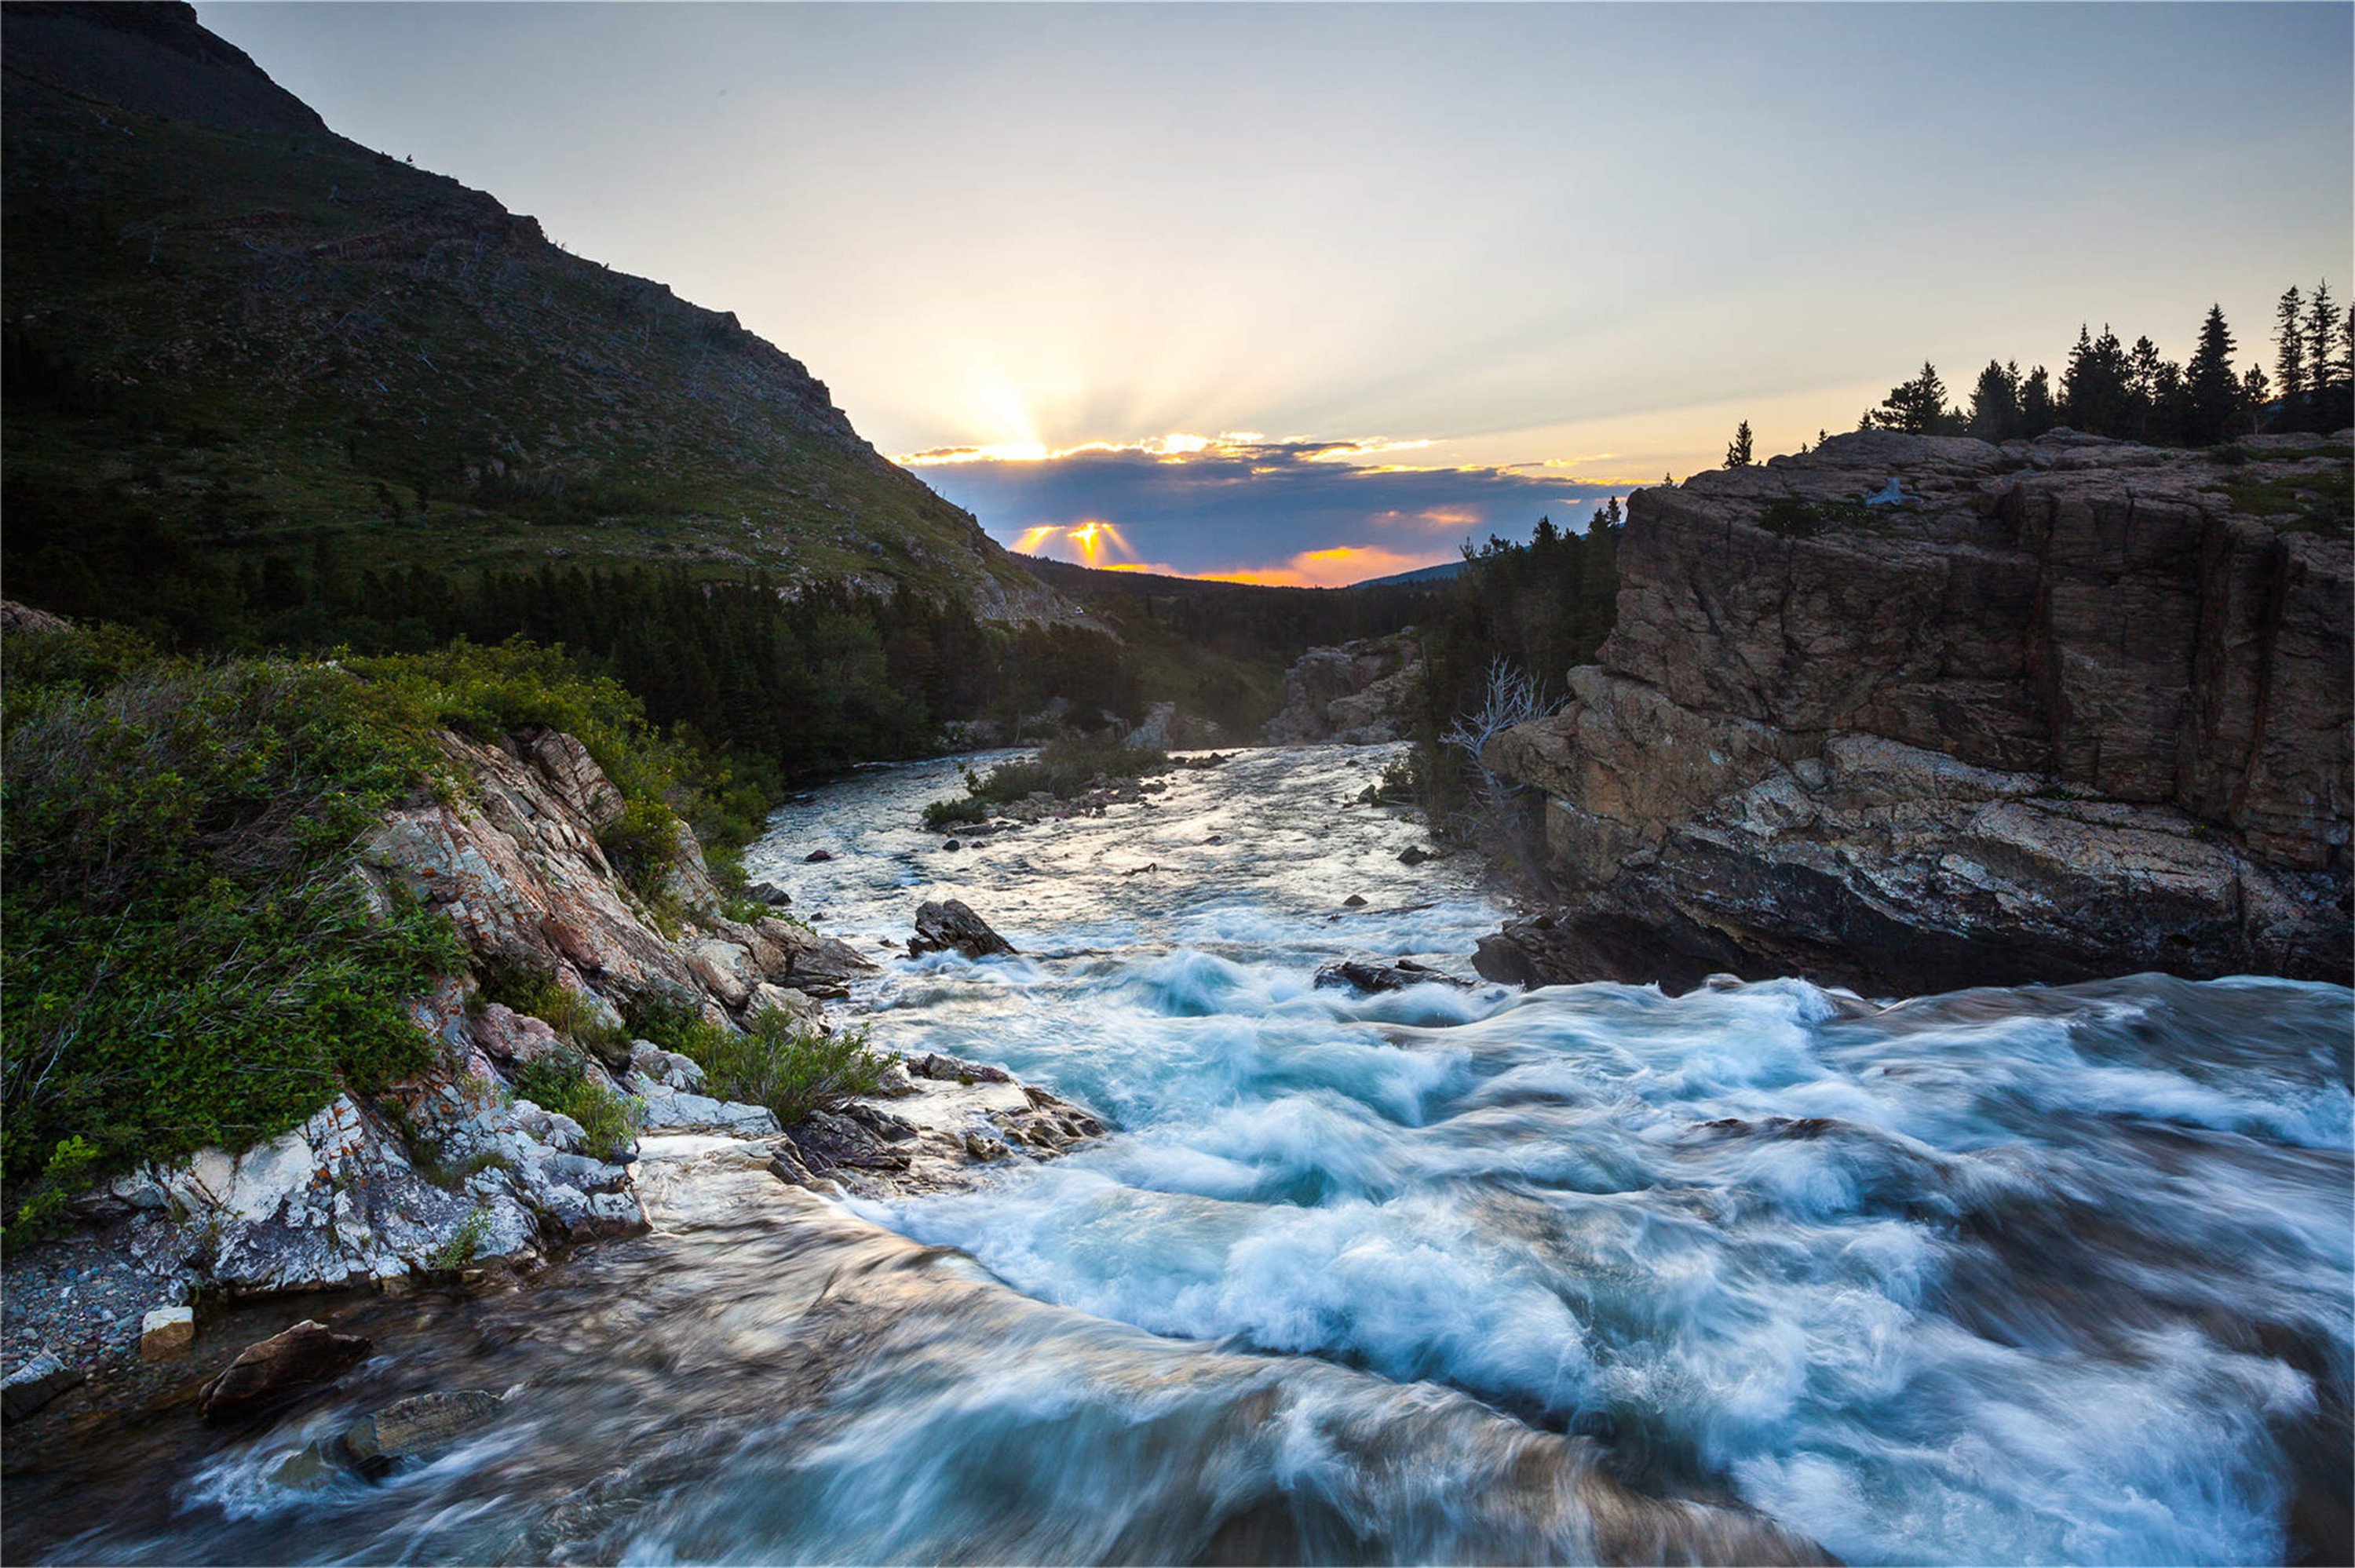 今日介绍6张山川风景图:带你领略大自然的美景,美不胜收